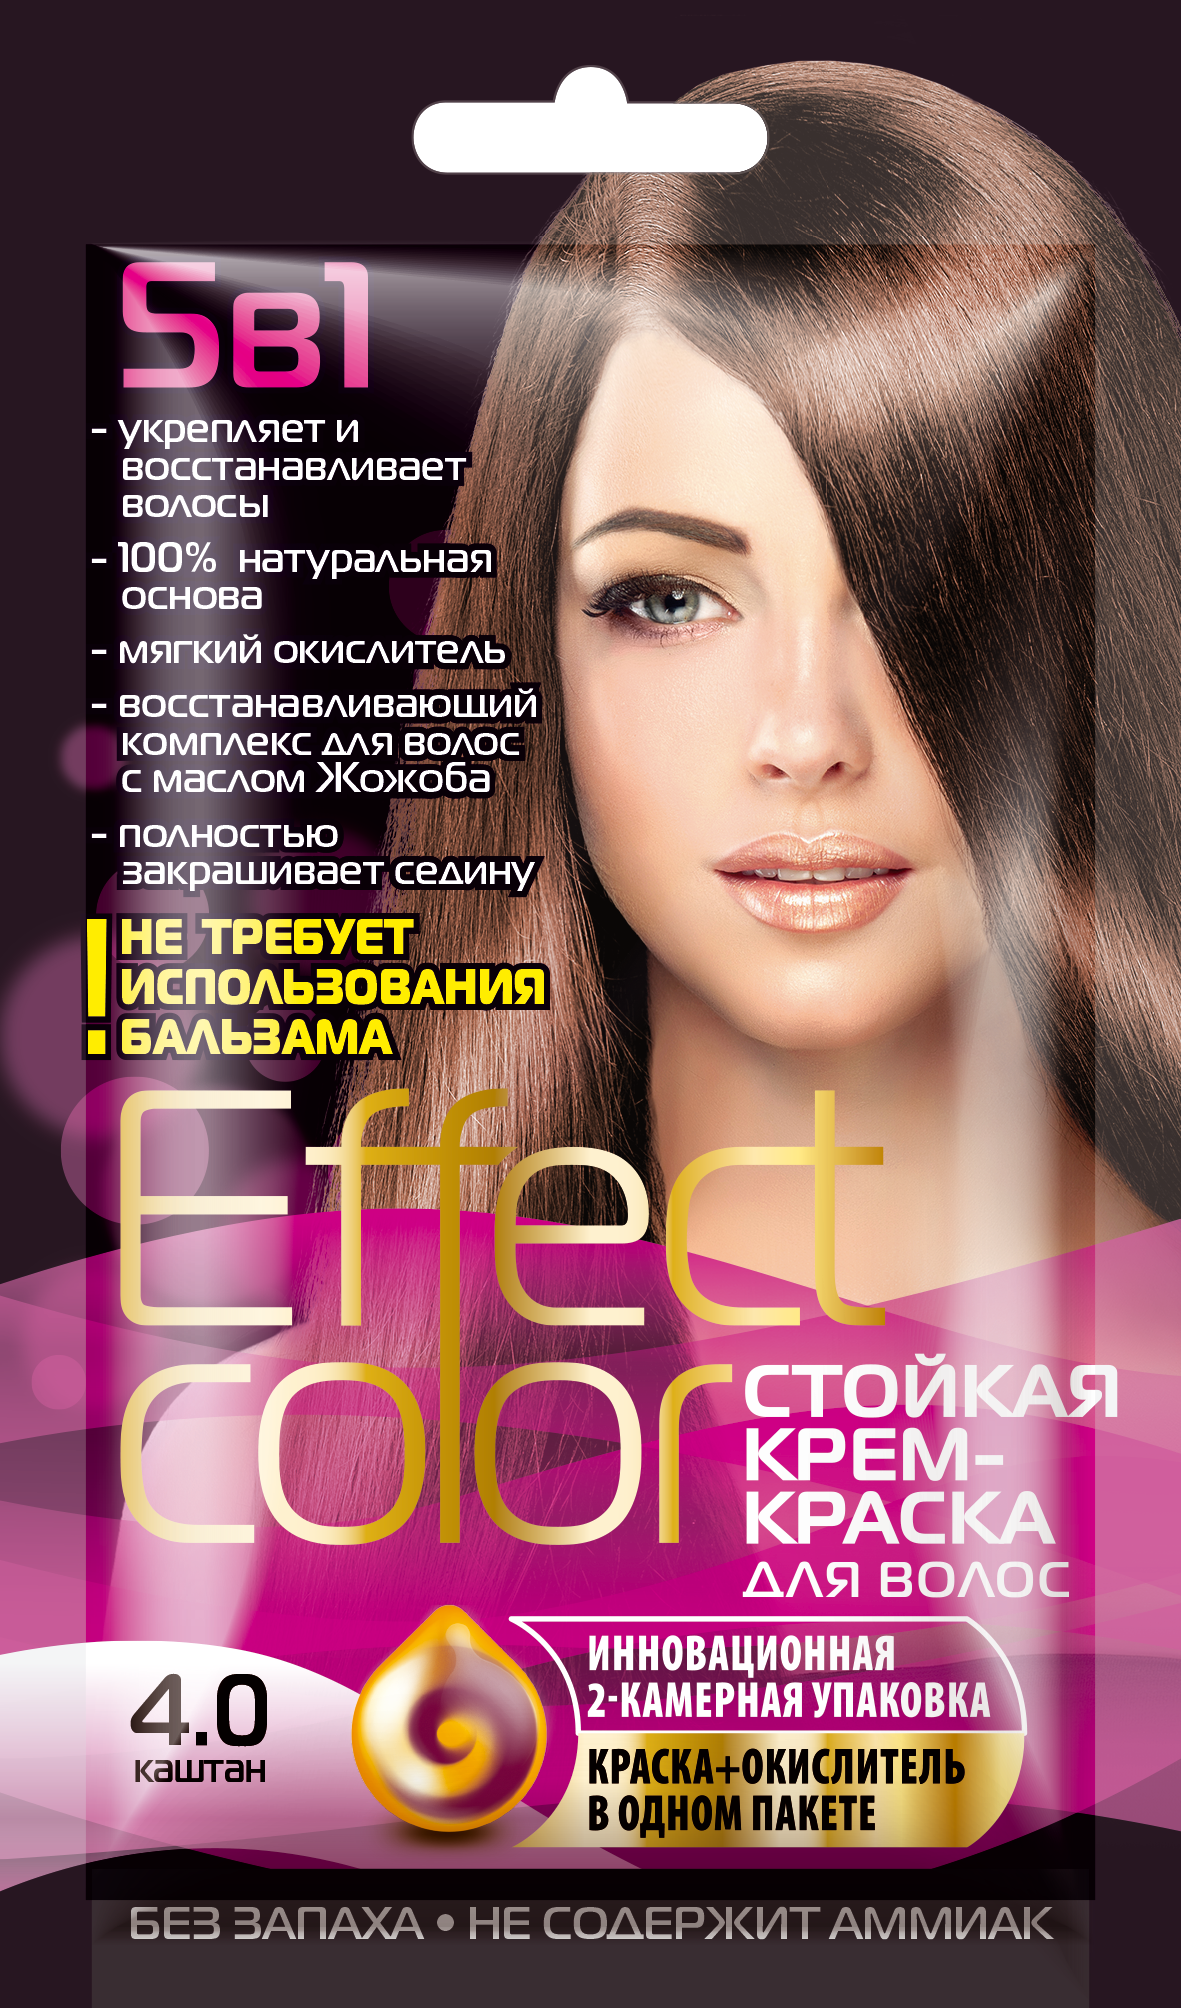 Cтойкая крем-краска для волос серии Effect Сolor, тон 4.0 каштан